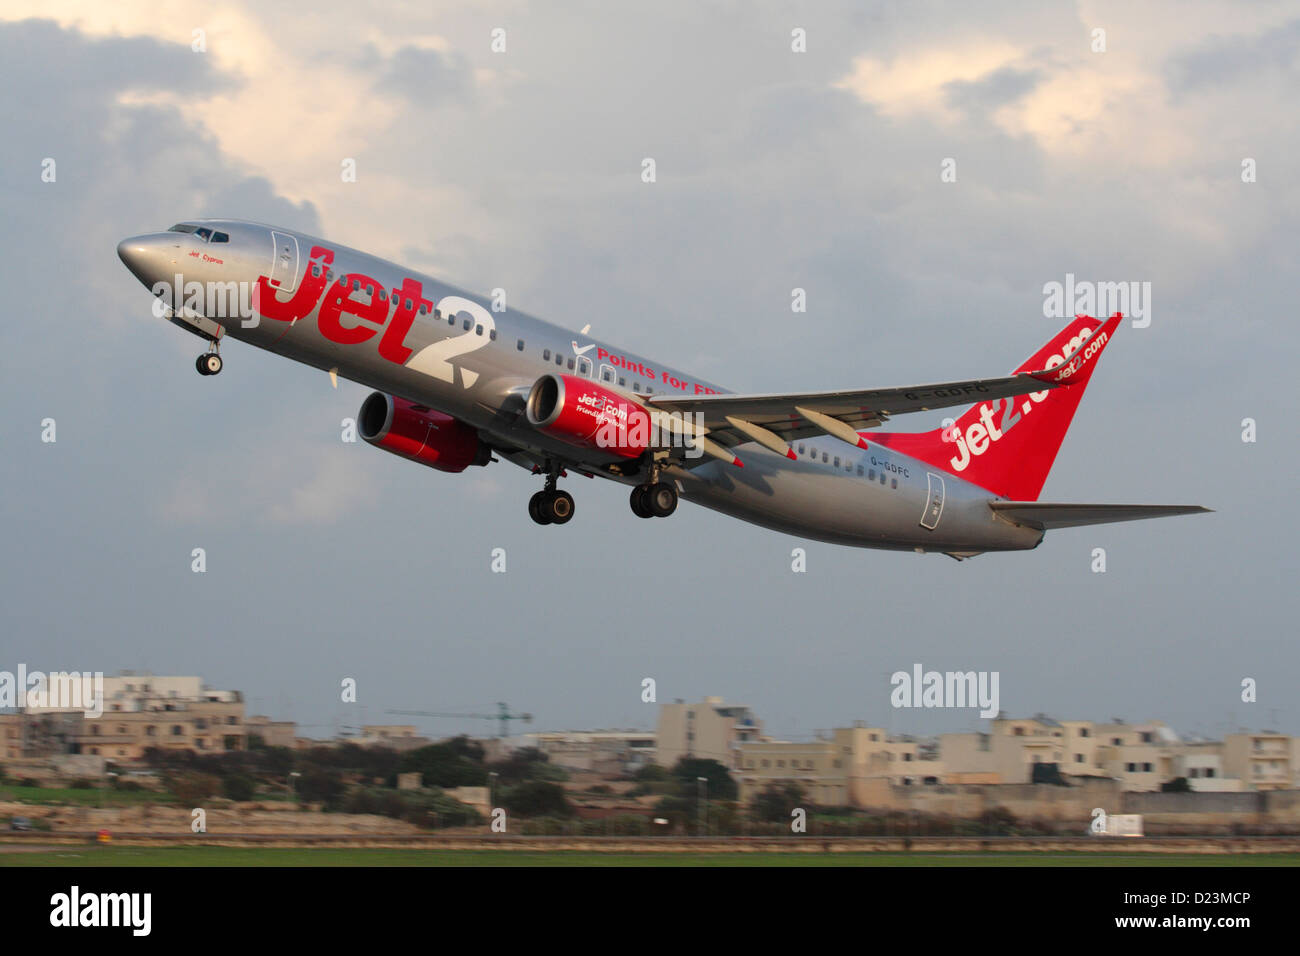 Günstige Flugreisen. Boeing 737-800-Düsenflugzeug der britischen Billigfluggesellschaft Jet2, das auf einem Flug von Malta aus abfliegt Stockfoto